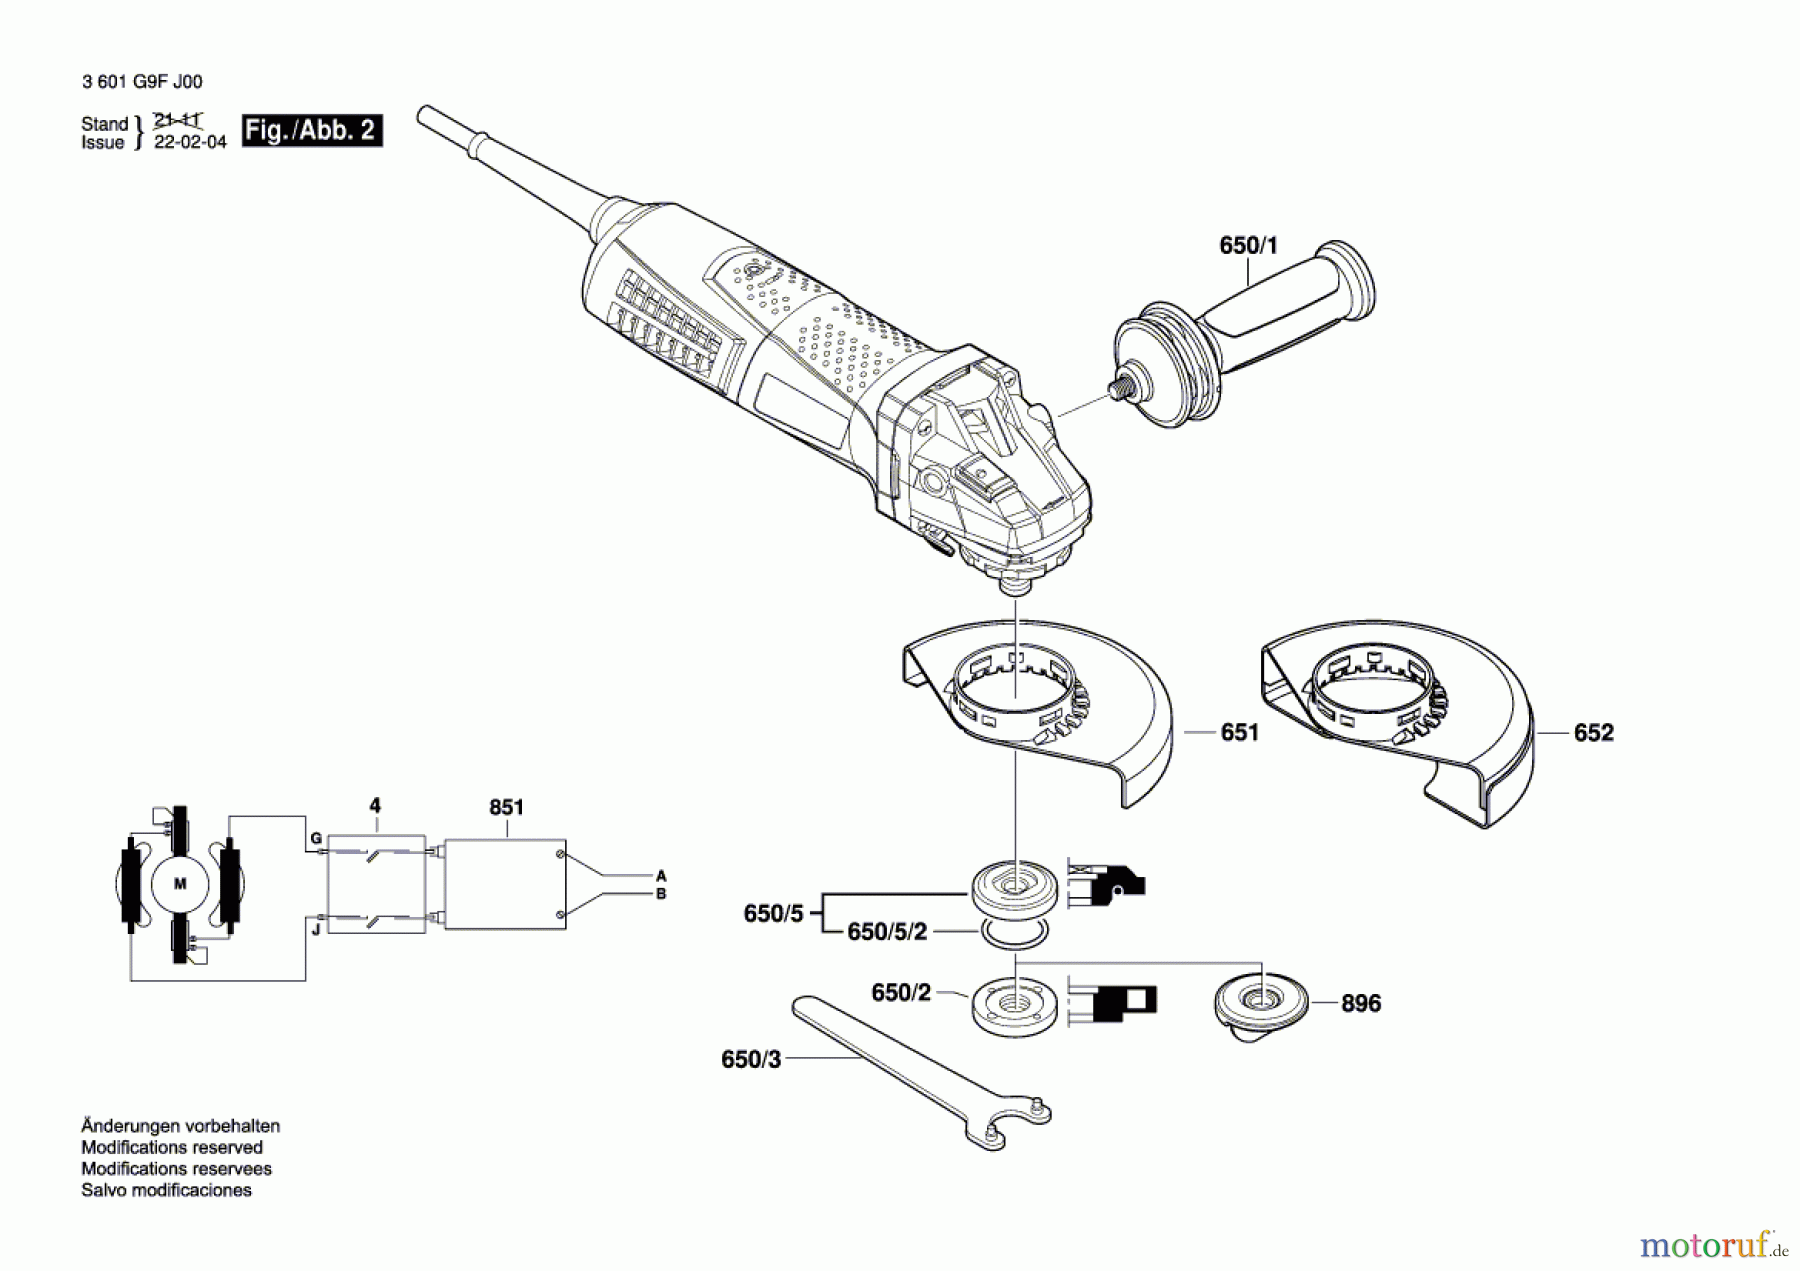  Bosch Werkzeug Winkelschleifer CG 13-125 V (Fein) Seite 2